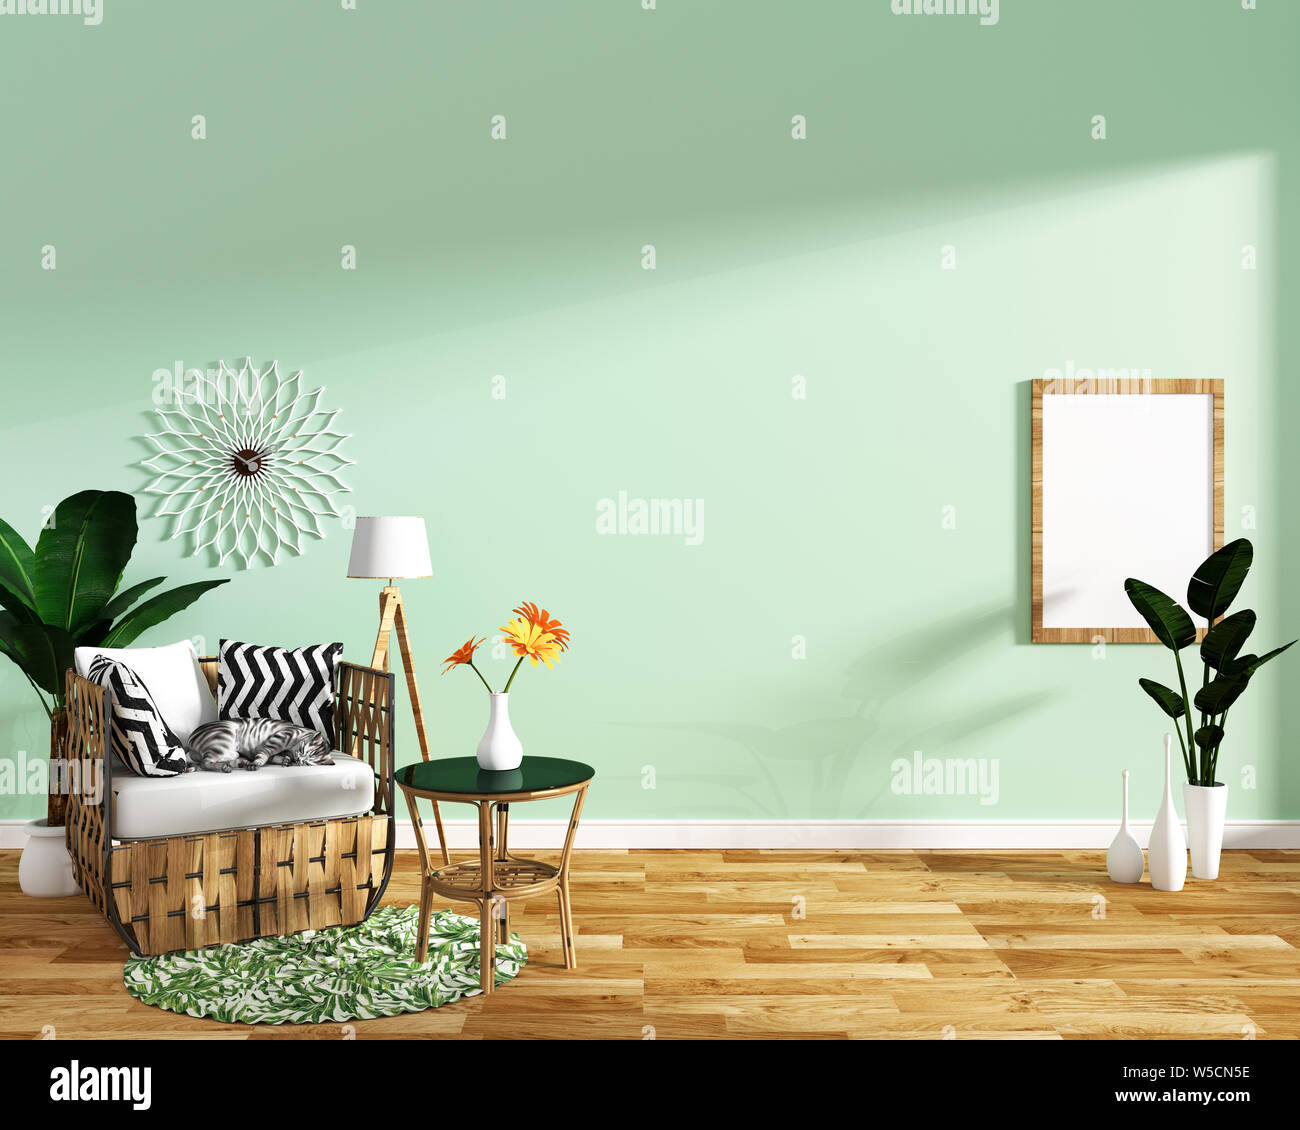 La vita moderna sala interna con poltrona decorazione e piante verdi sulla piastrella di menta texture di sfondo parete,design minimal, rendering 3d. Foto Stock